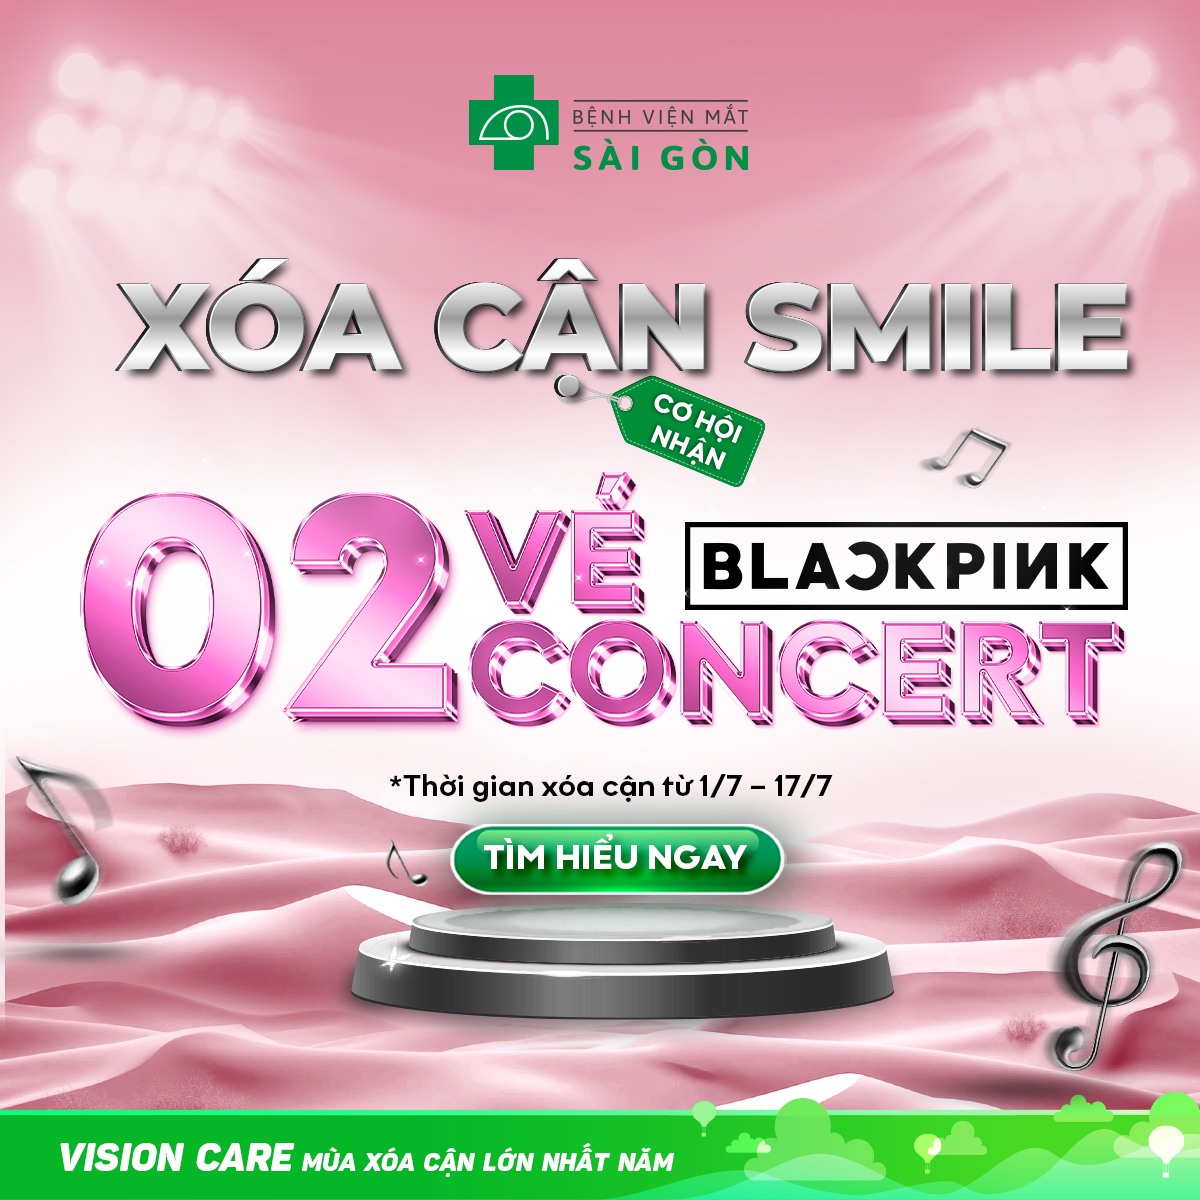 Tin nóng cho fan BlackPink: Xóa cận SMILE, cơ hội nhận 2 vé concert Born Pink tại Mắt Sài Gòn